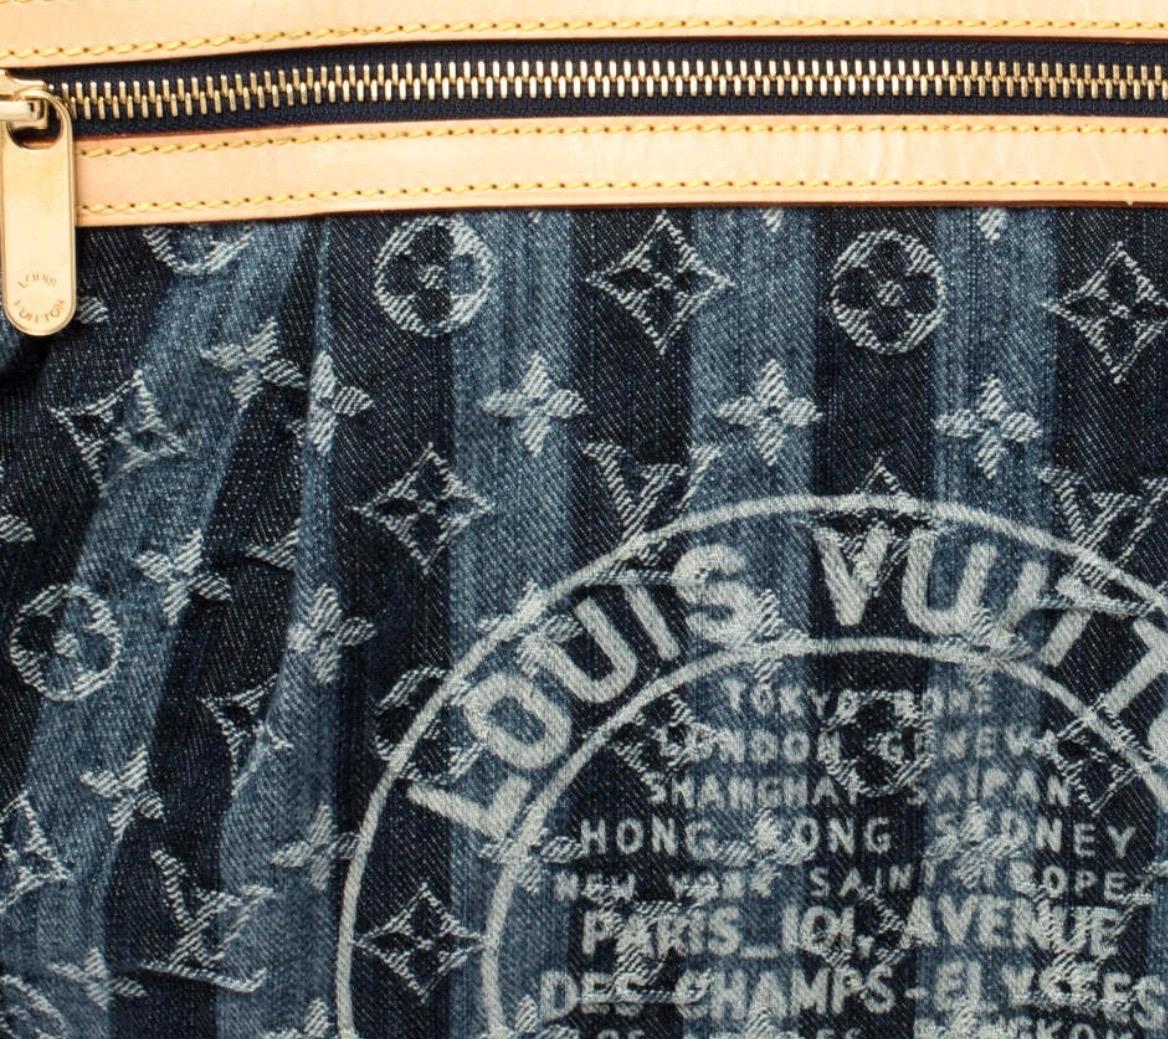 UNWORN Louis Vuitton Monogram Denim Trunks & Bags Travel Shoulder Bag Weekender 1